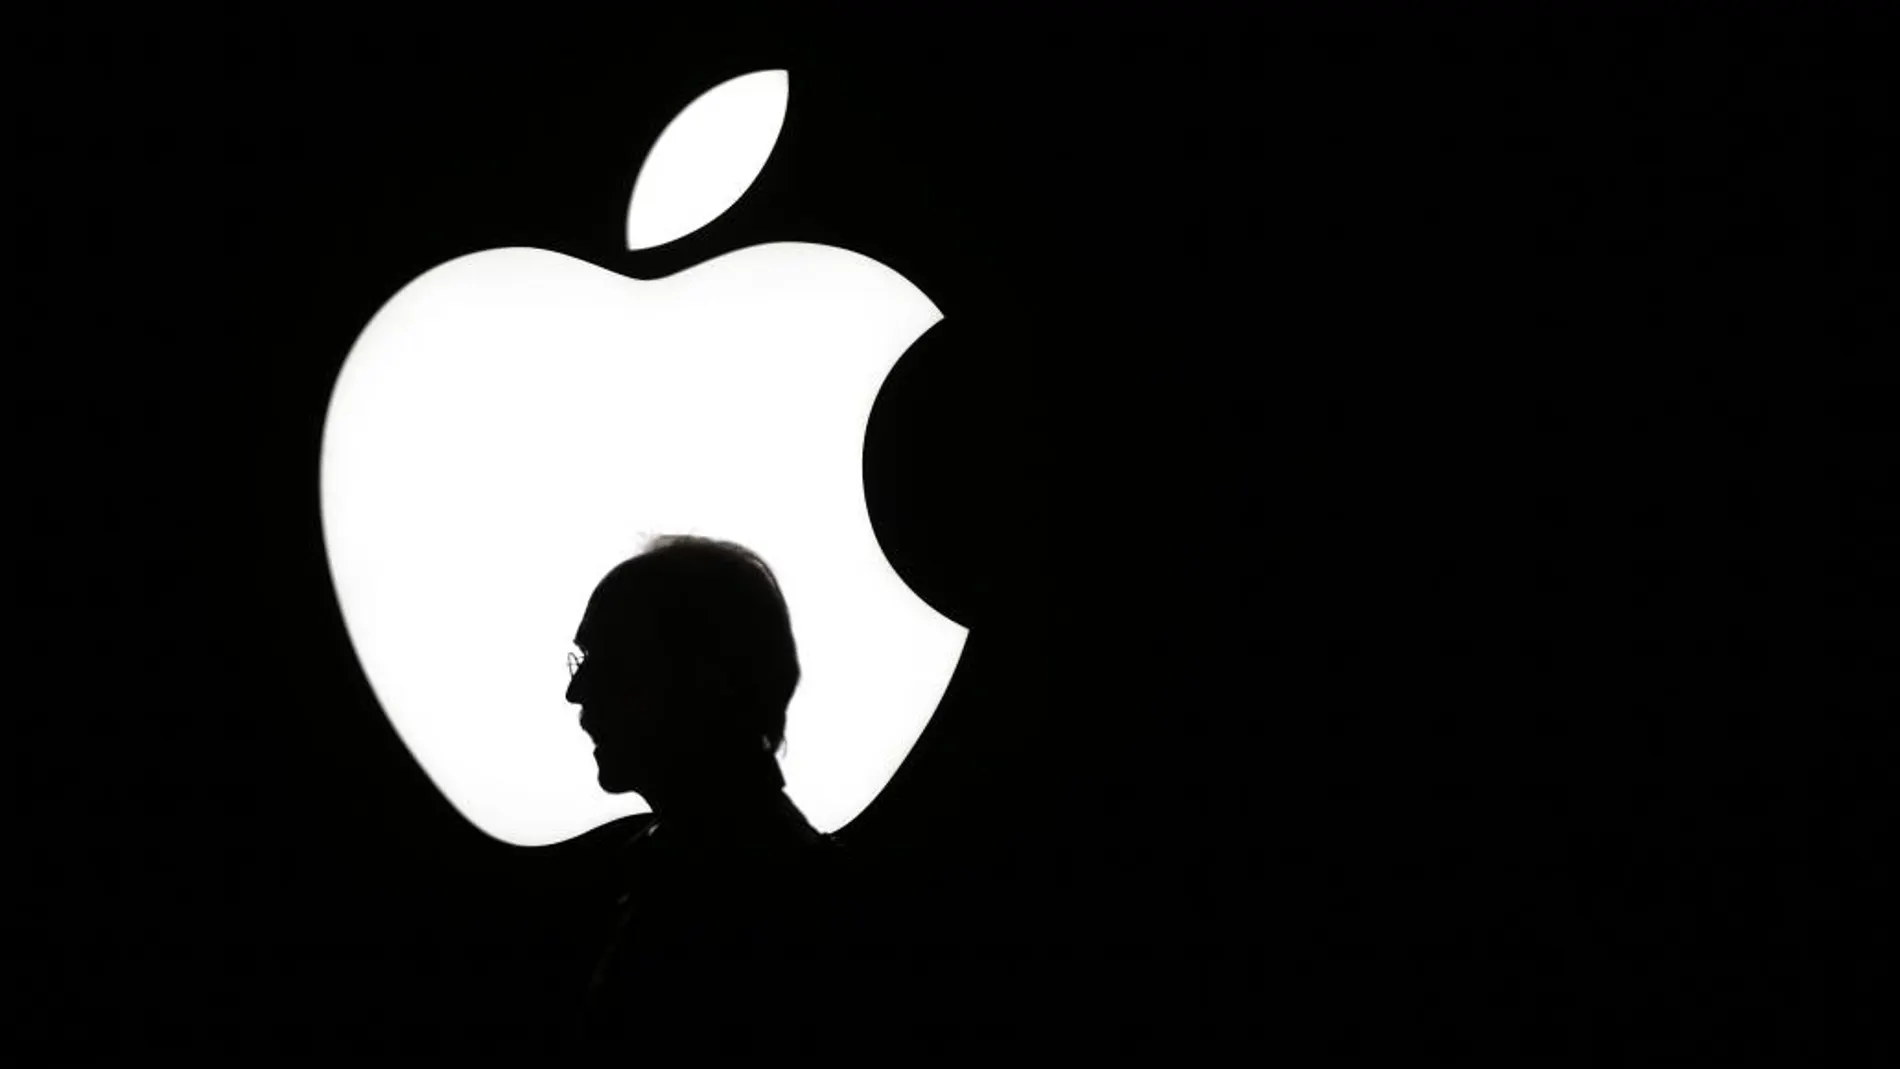 Apple lidera las buenas cifras de Silicon Valley